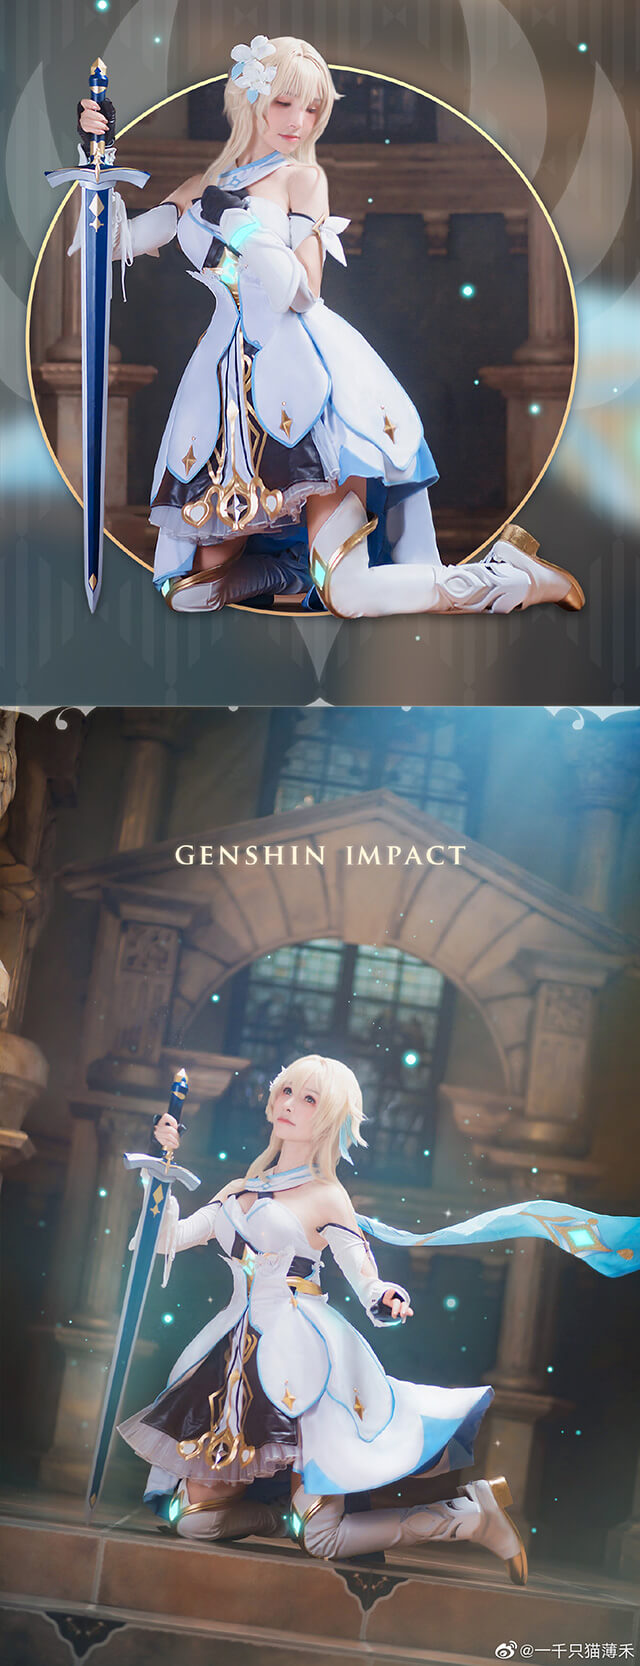 Trước khi vào Genshin Impact, hãy ngắm bộ cosplay nhân vật chính xinh đẹp lấy cảm hứng nhé!